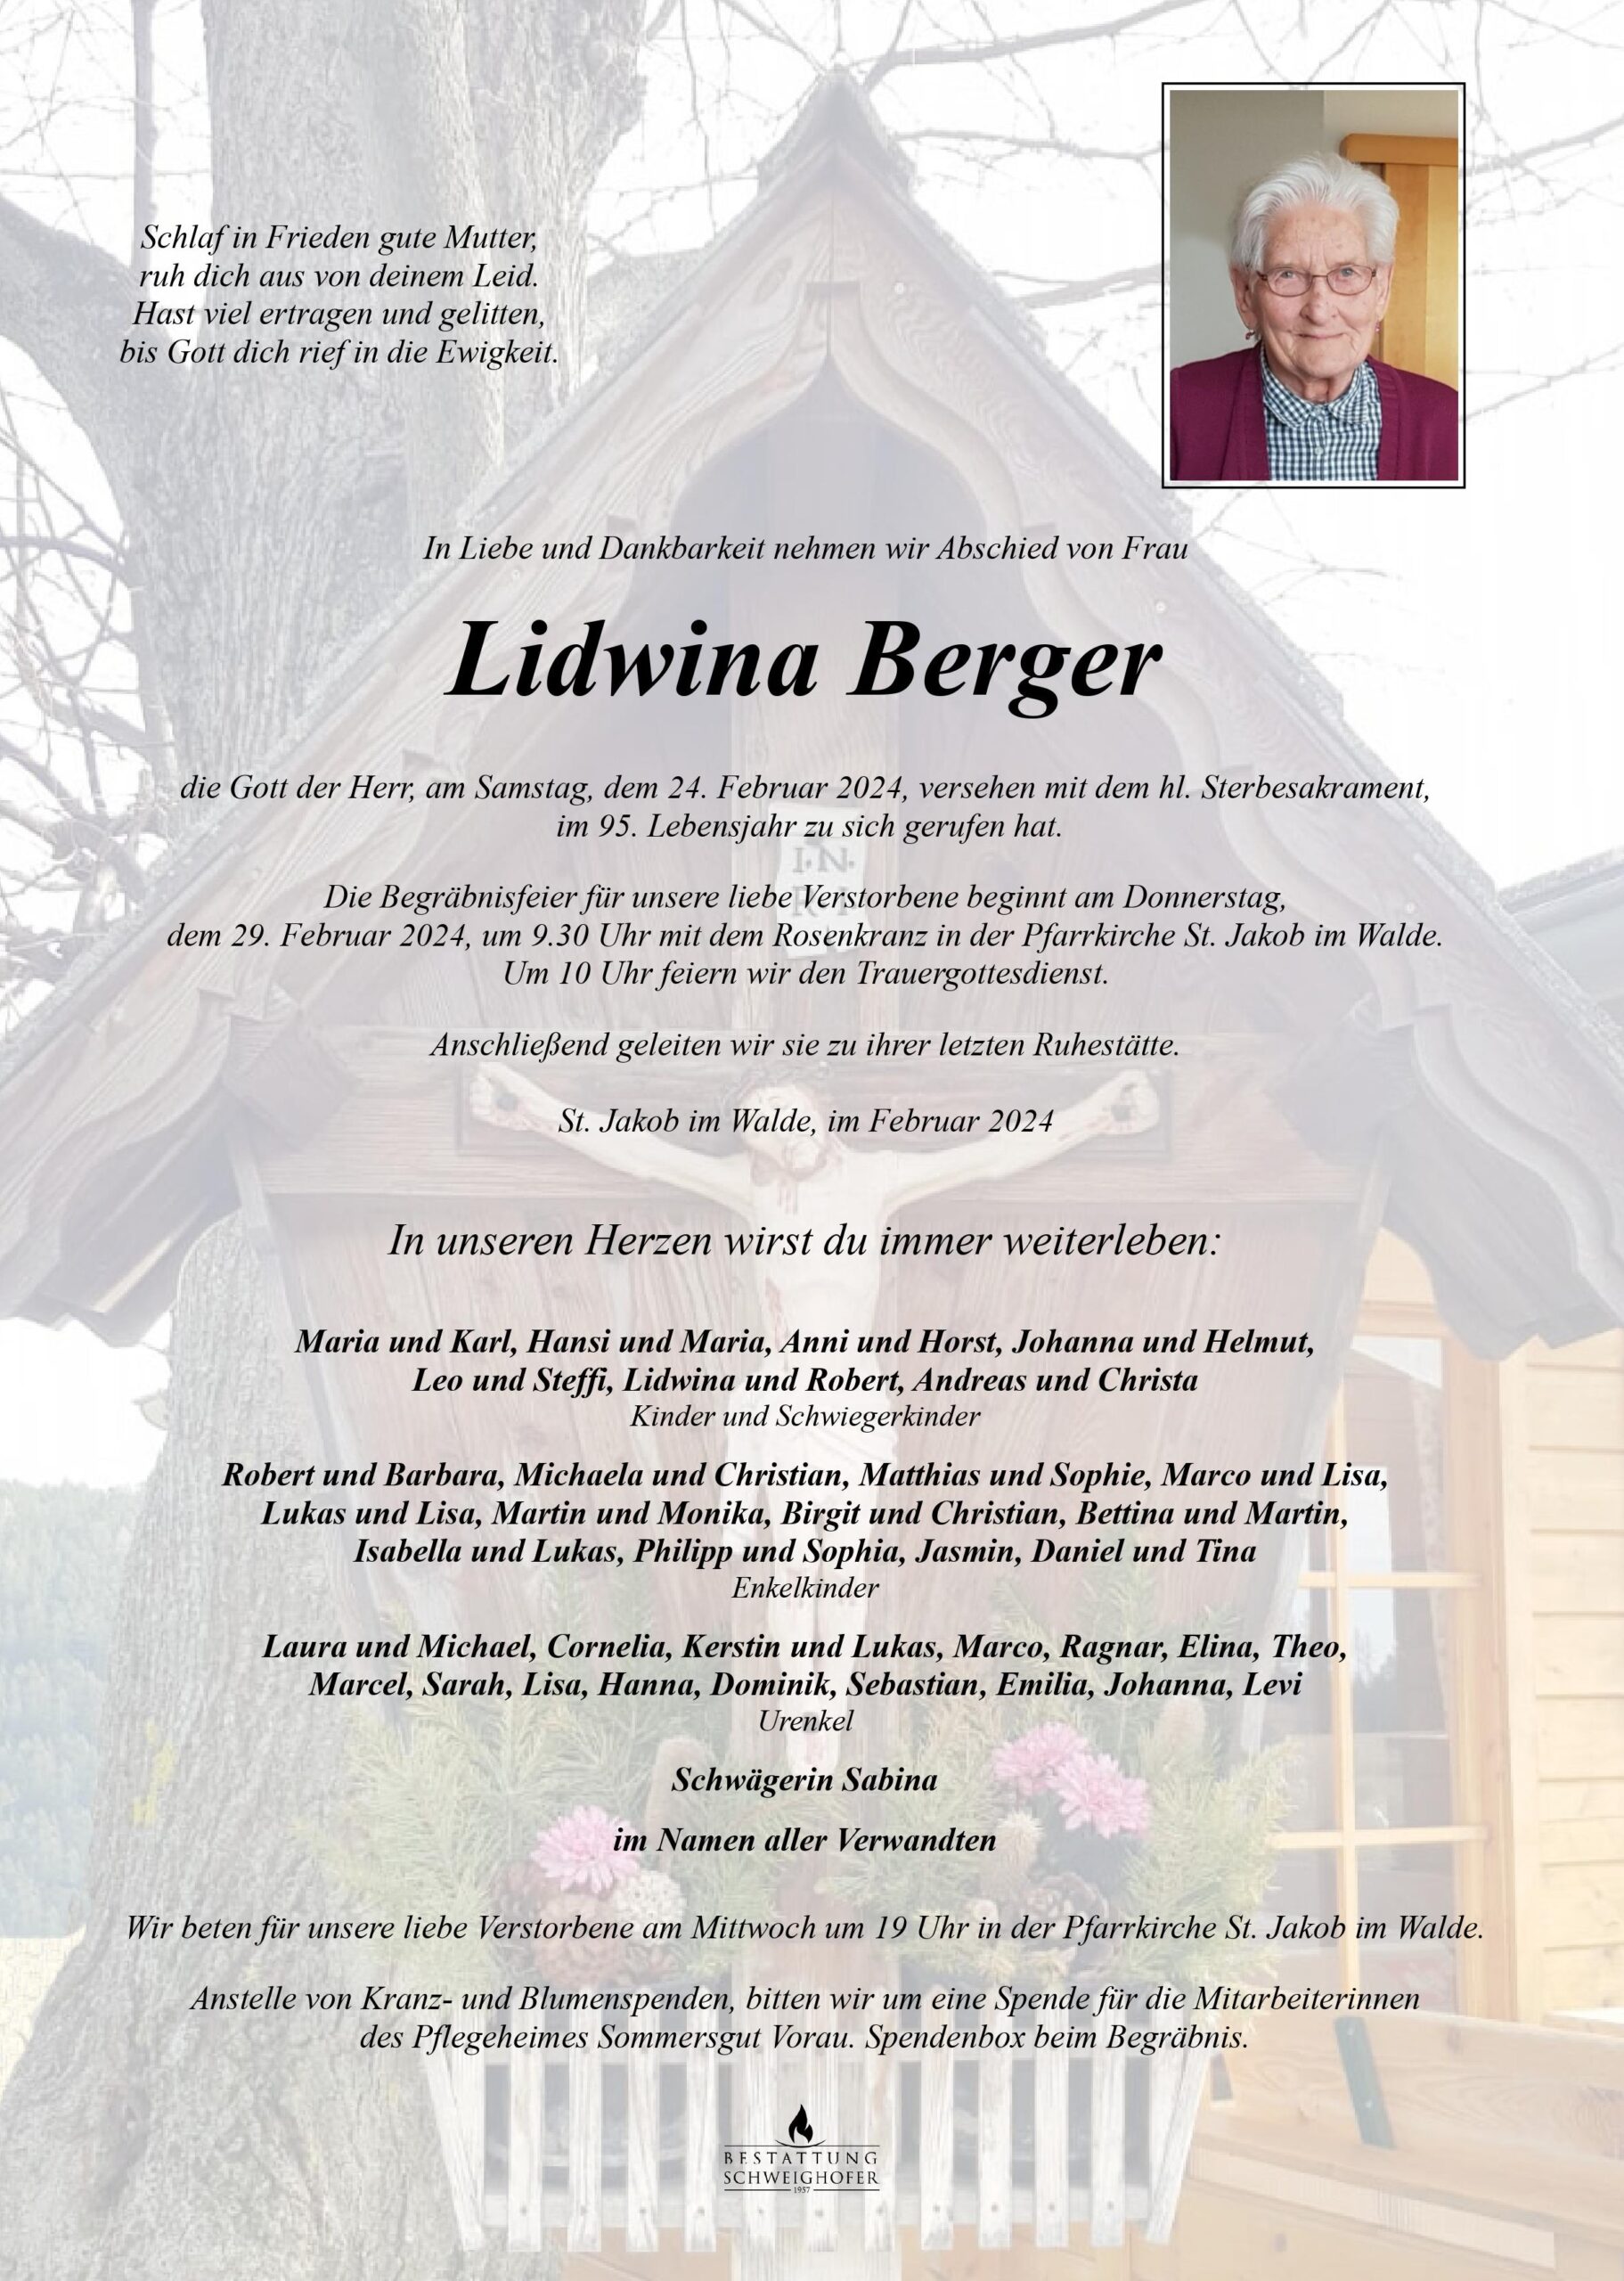 Lidwina Berger